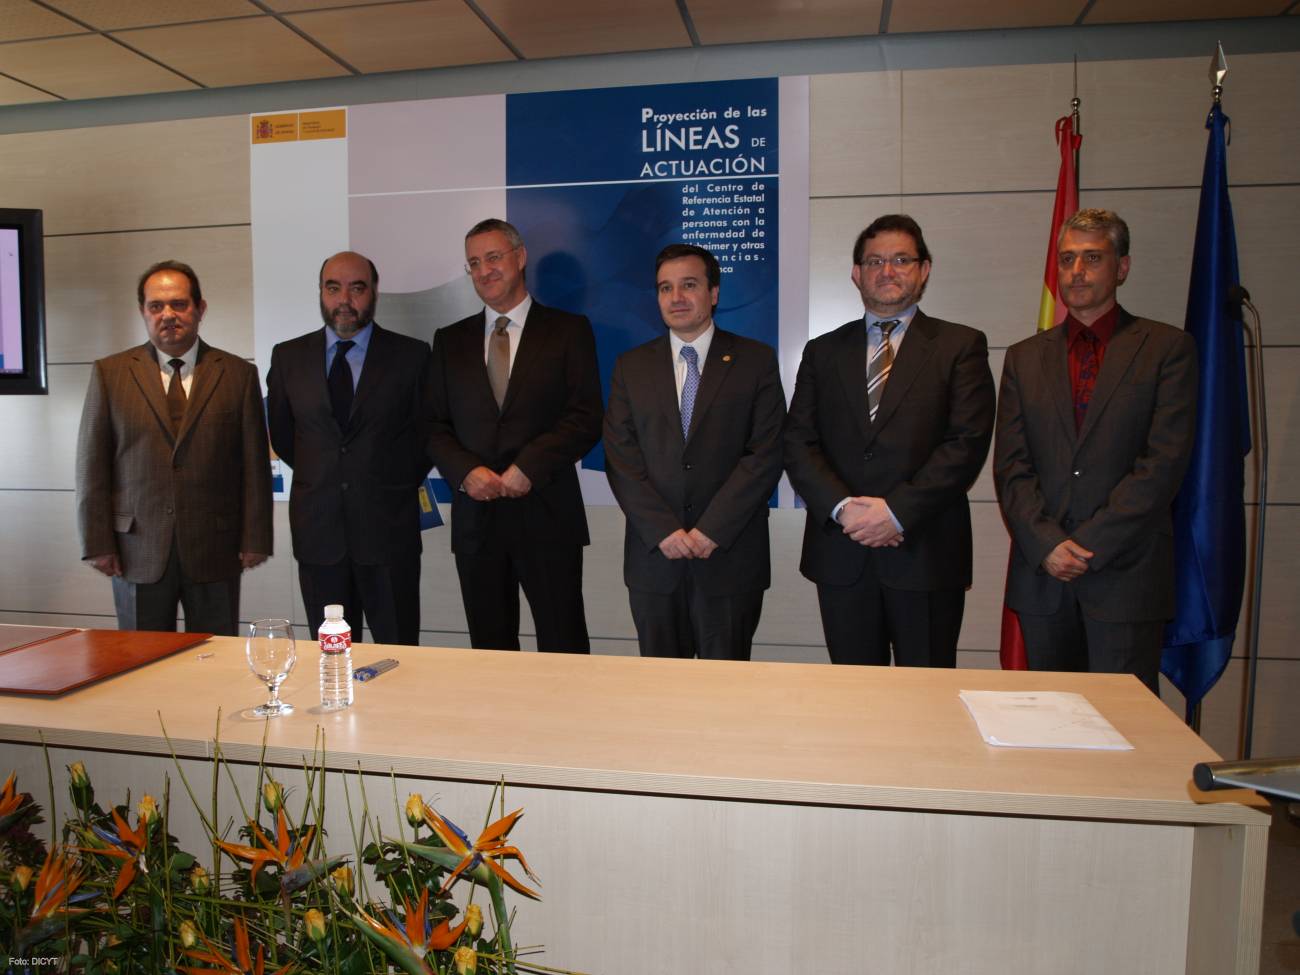 De izquierda a derecha, Marceliano Arranz, Alfonso Gracia, Jesús Caldera, José Ramón Alonso, Emilio Marmaneu y Rubén Muñiz, firmantes de los convenios.